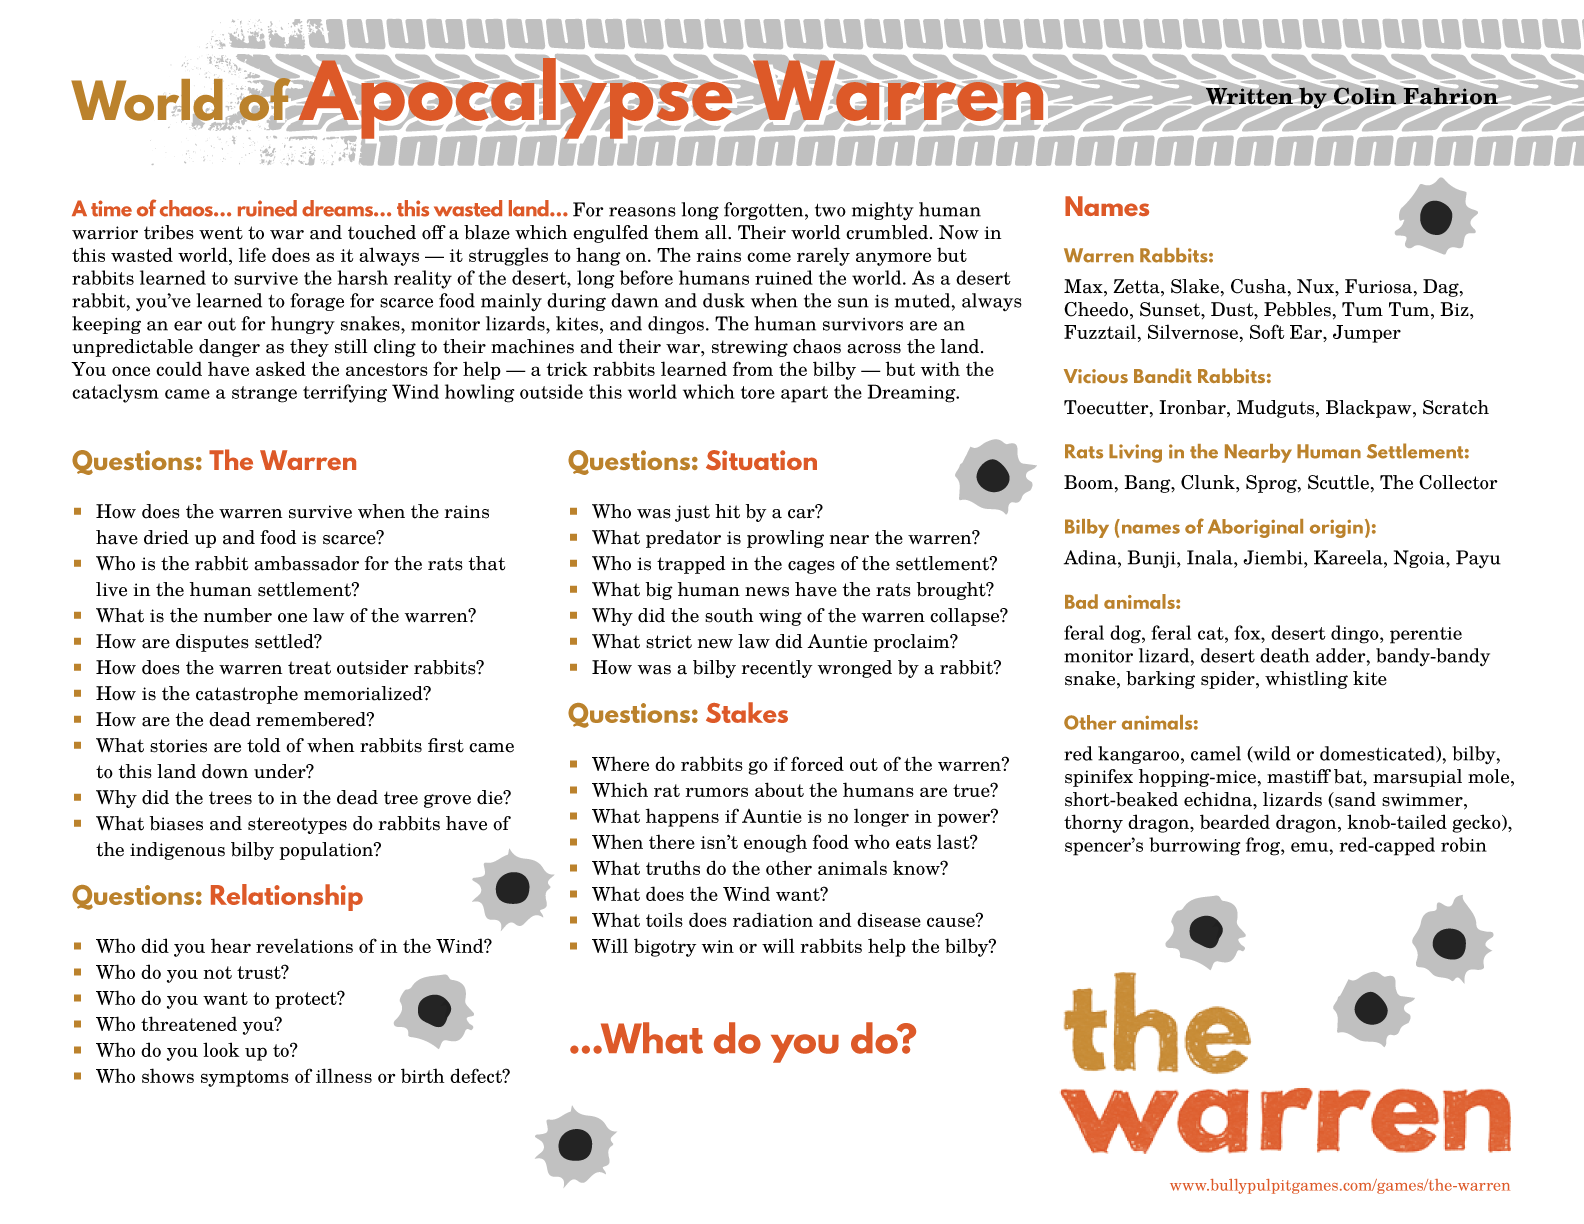 warren_world-apocalypse_warren-p1